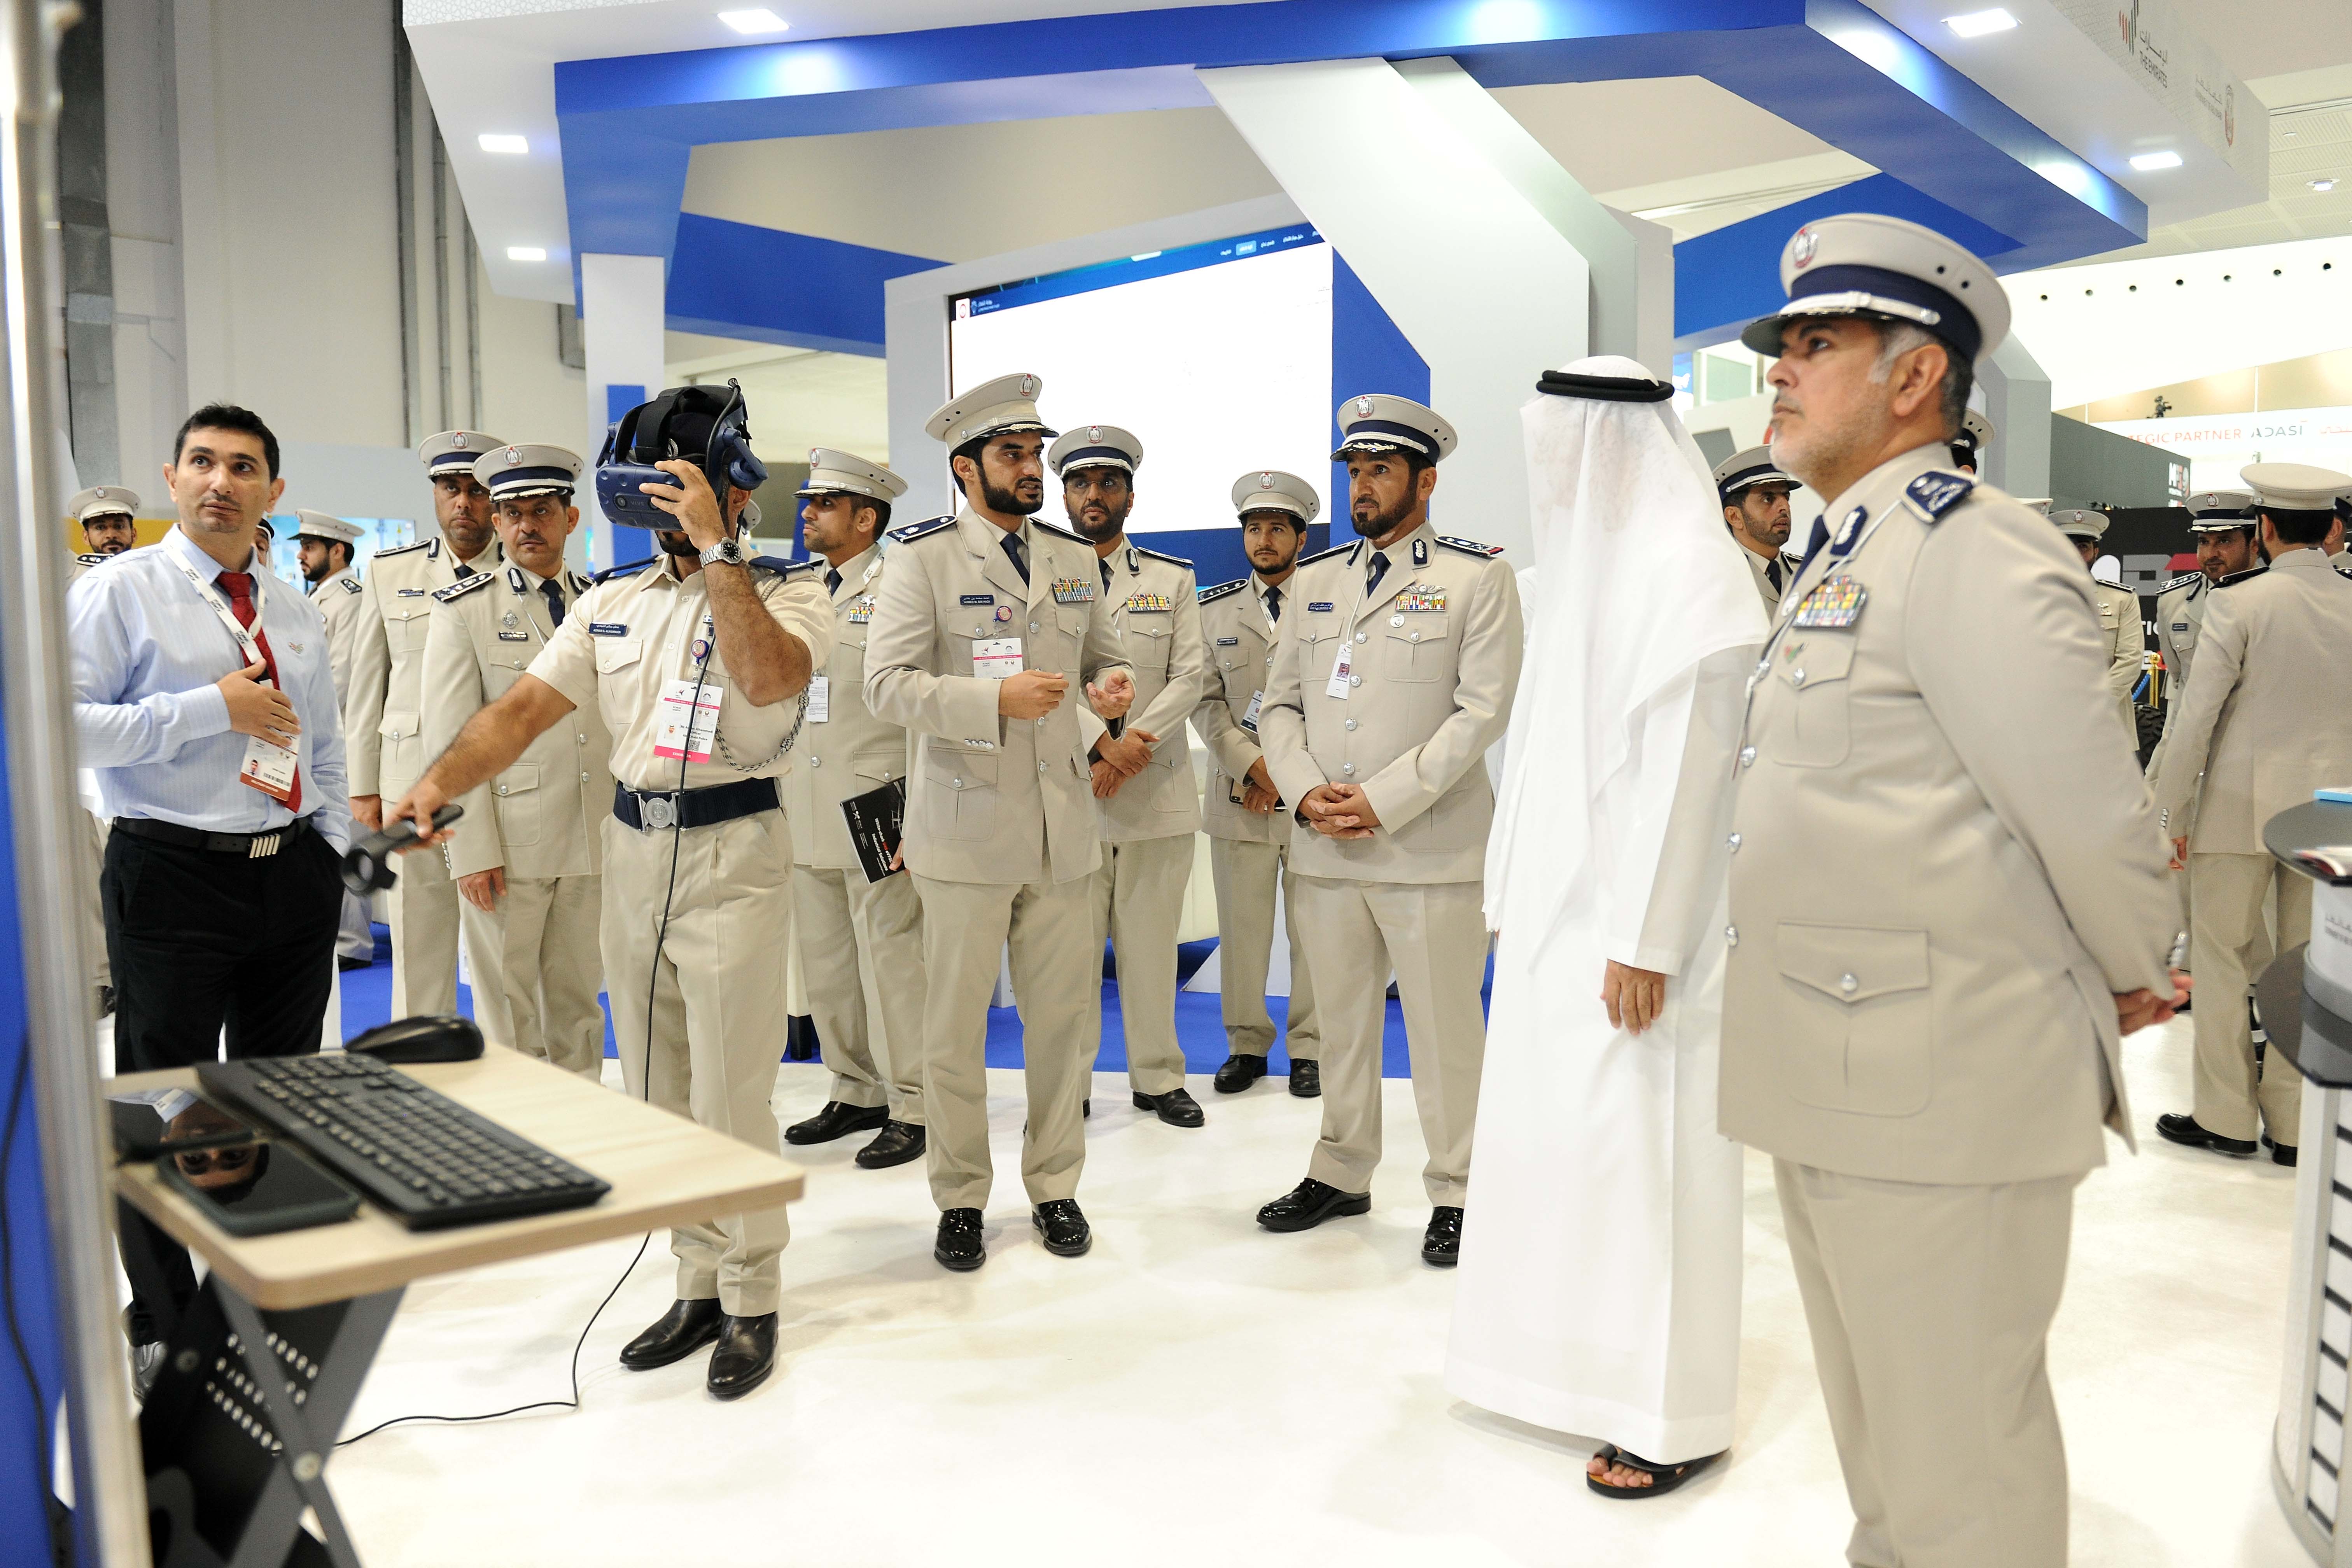 قائد عام شرطة أبوظبي يزور معرضي "يومكس" وسيمتكس"